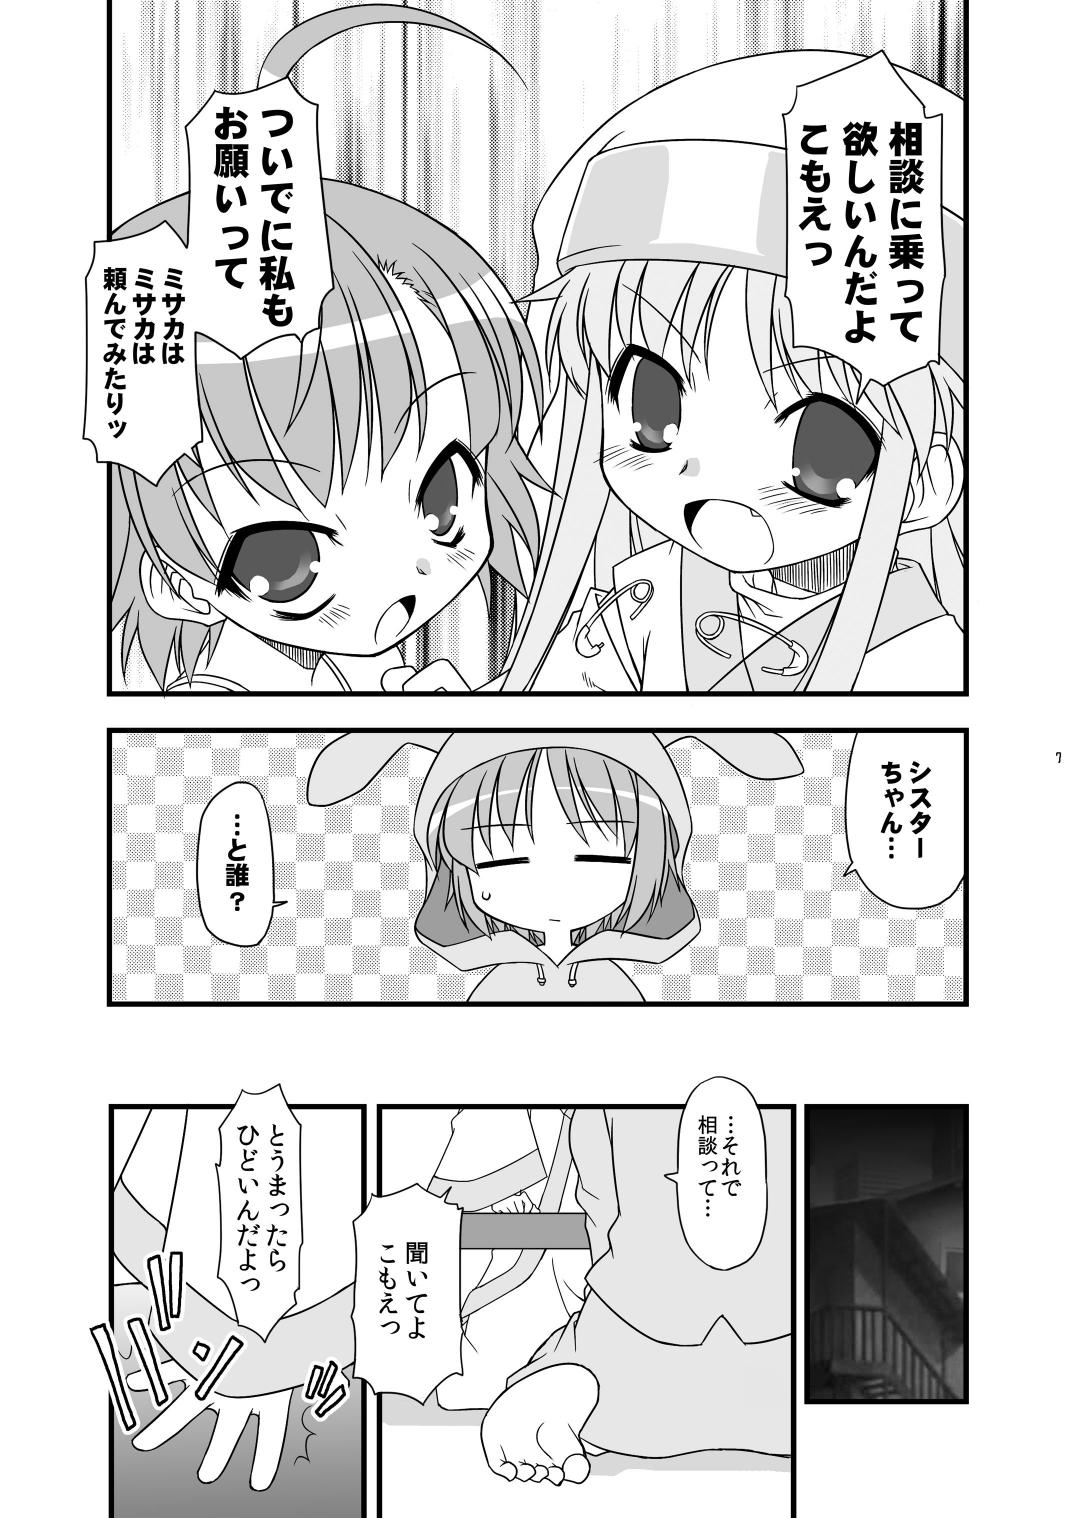 Home KA+SHI+MA+SHI=INDEX! - Toaru majutsu no index Boys - Page 8